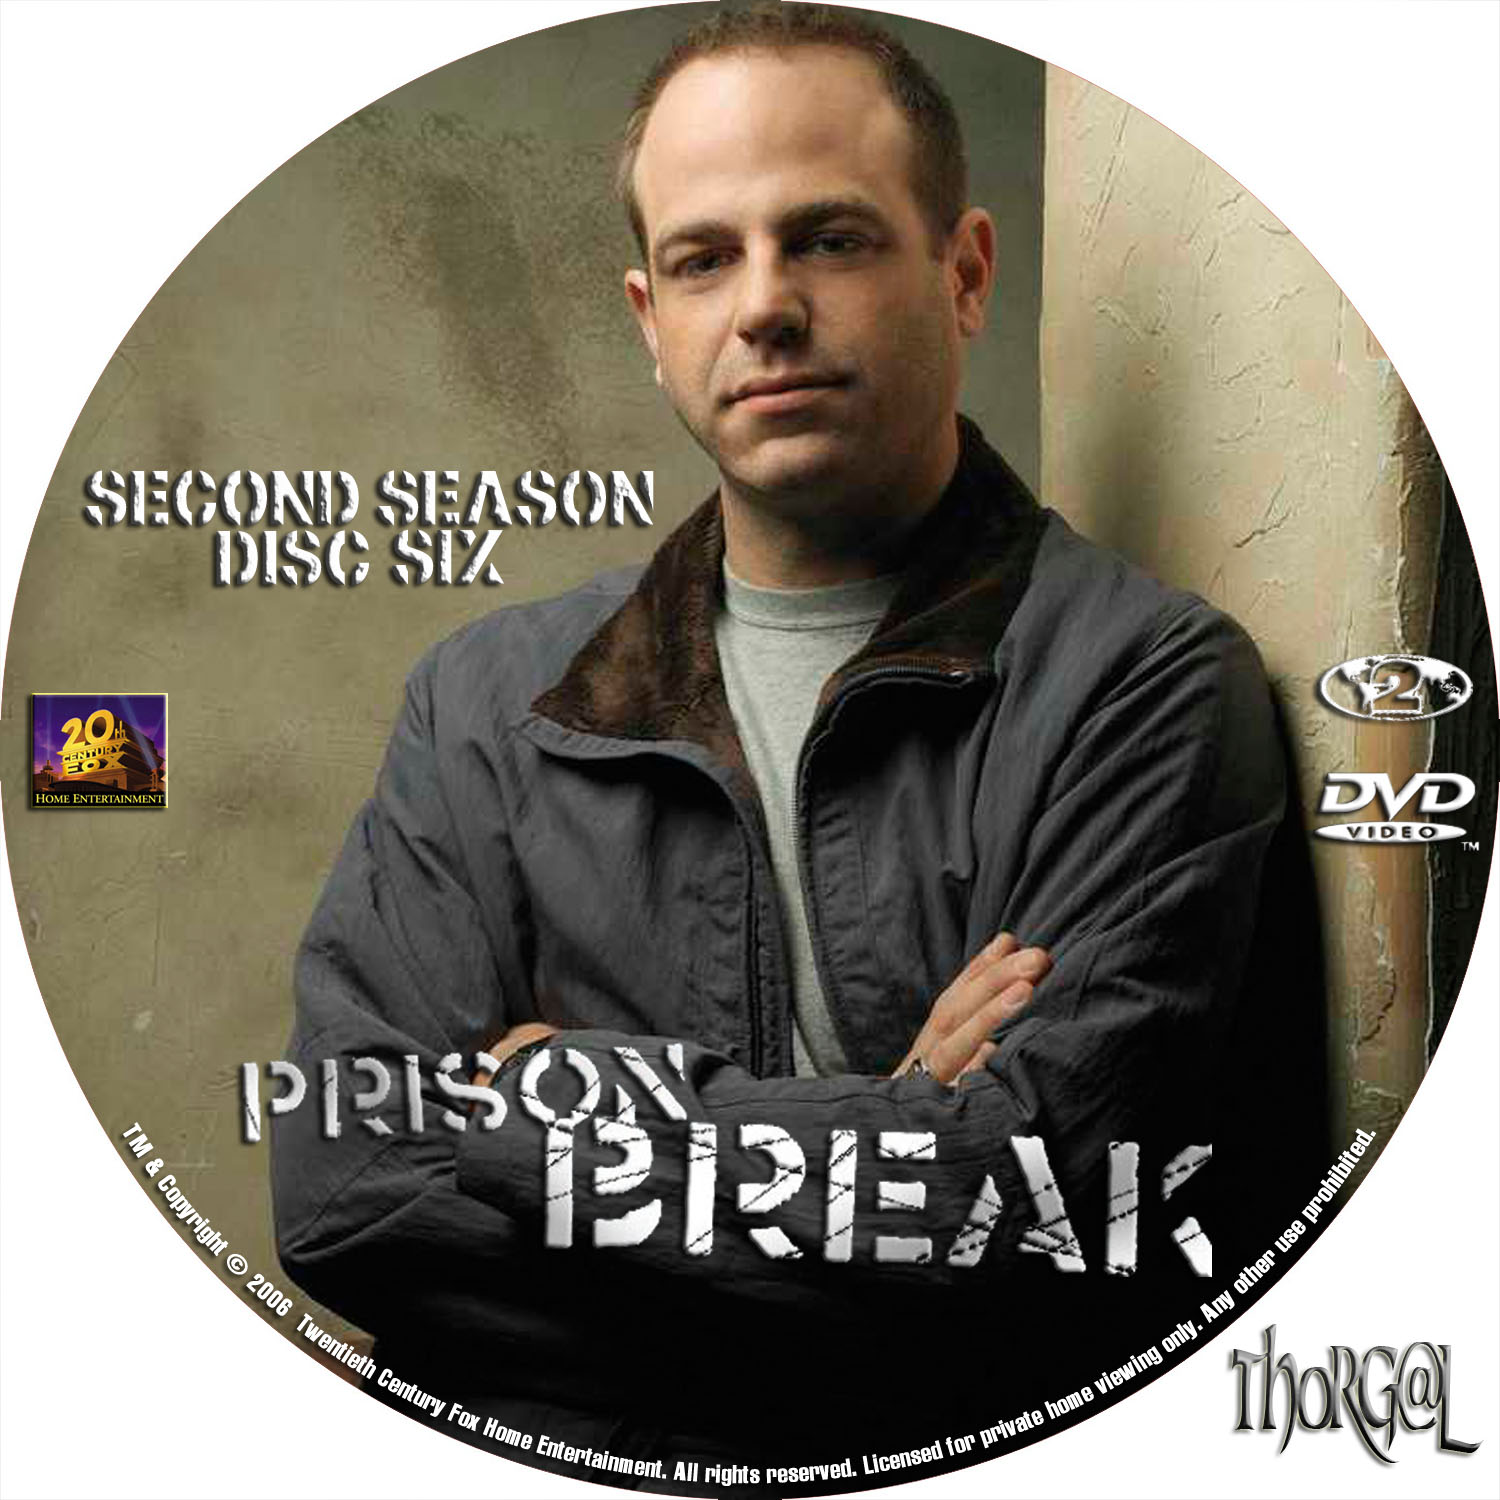 prison break season 2 subtitles english